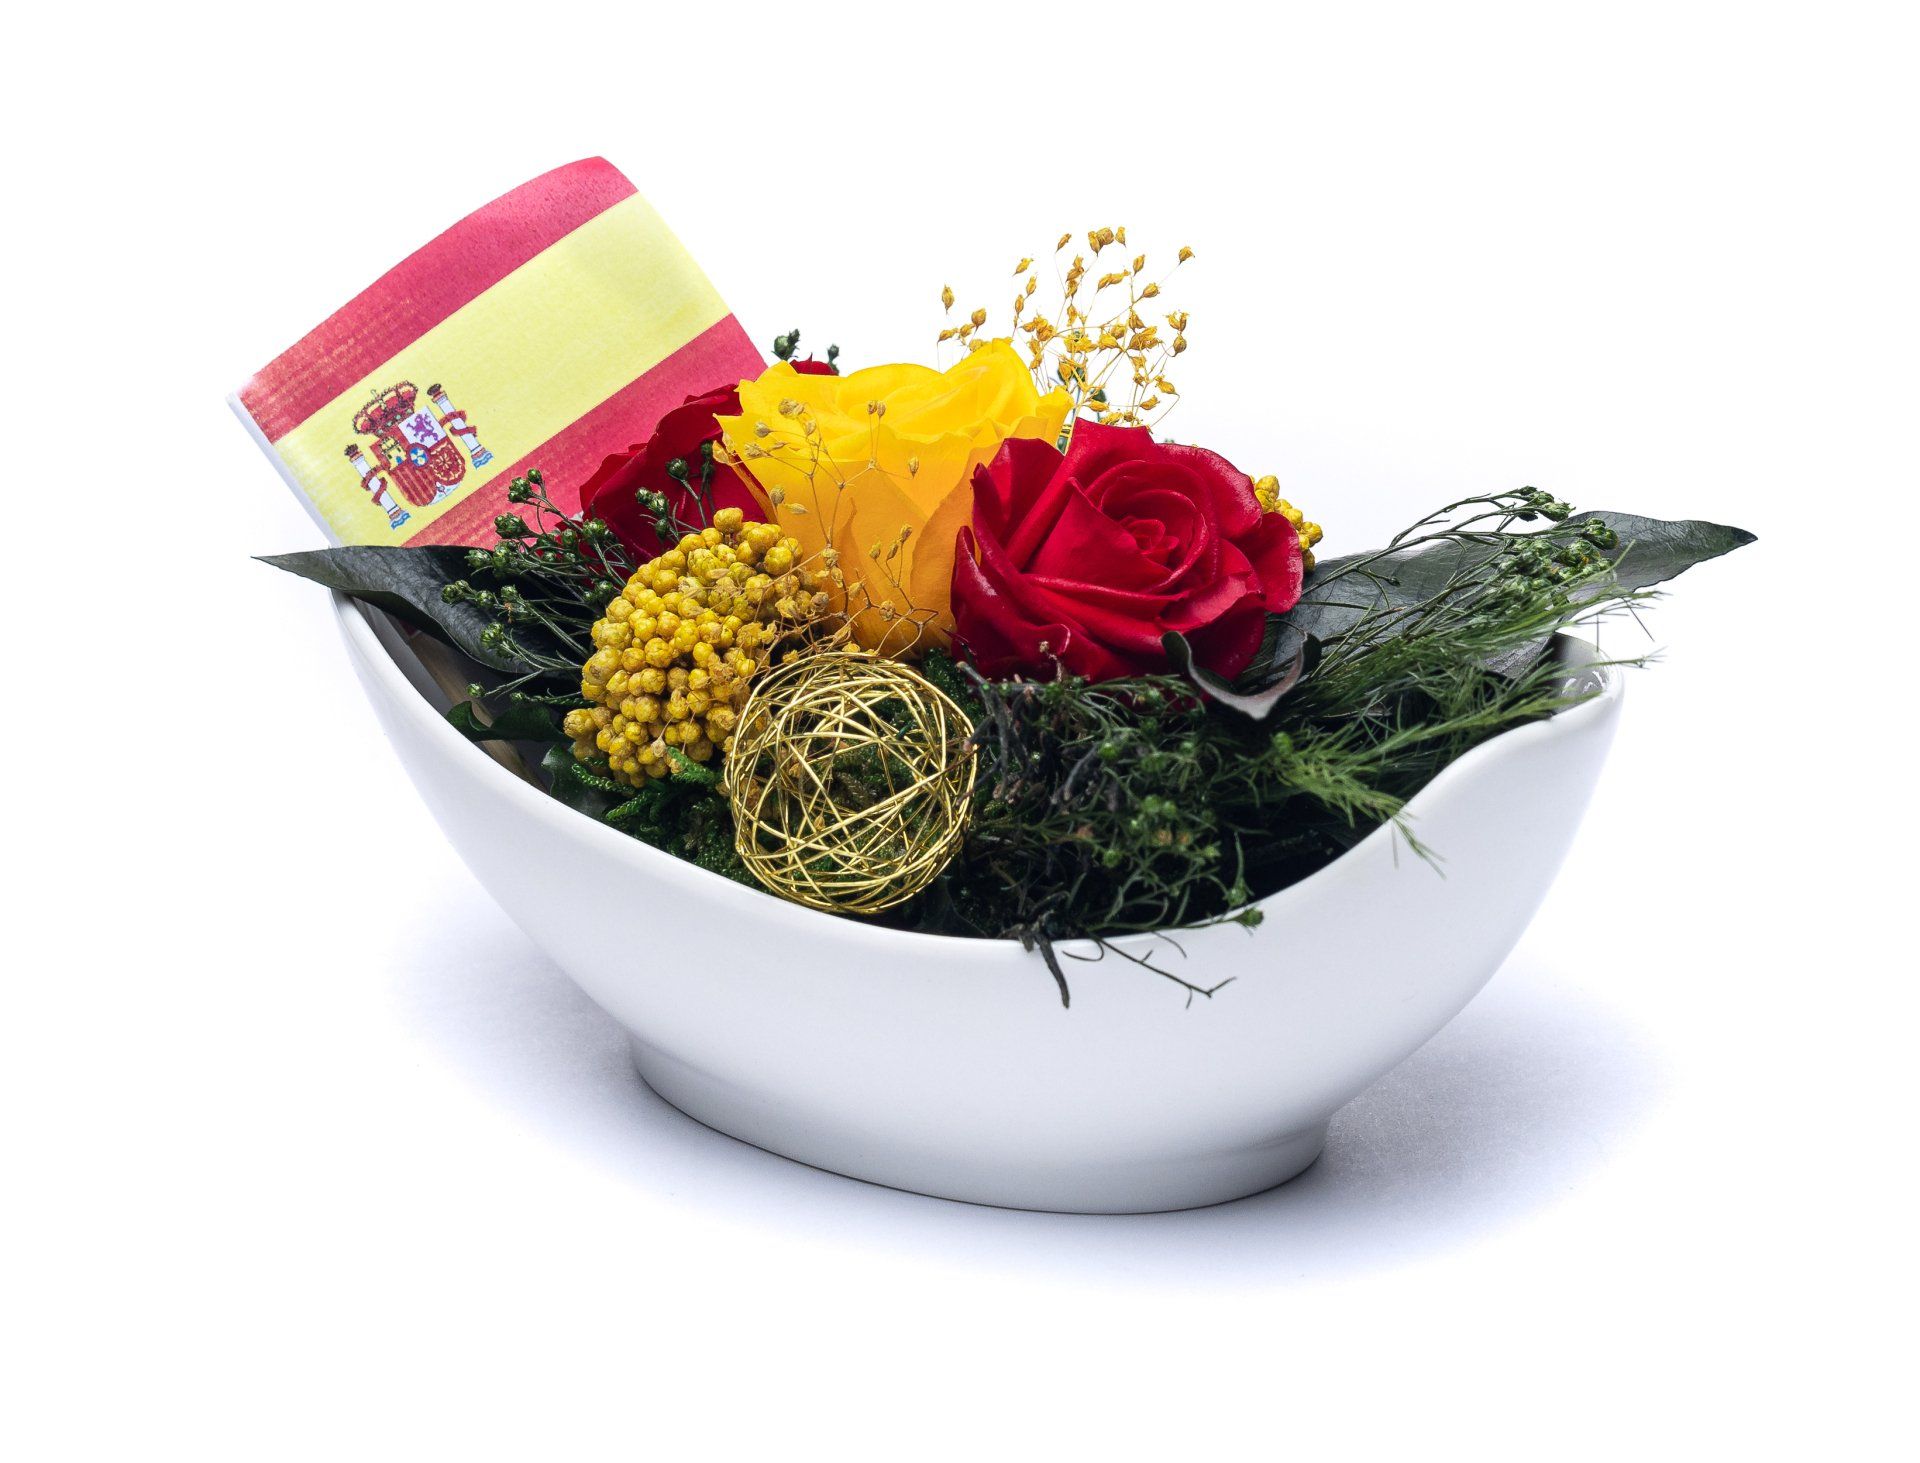 Rote-Rosengestecke | konservierte-Blumen-Geschenke | rote-Rosen-im-Keramik Vase |